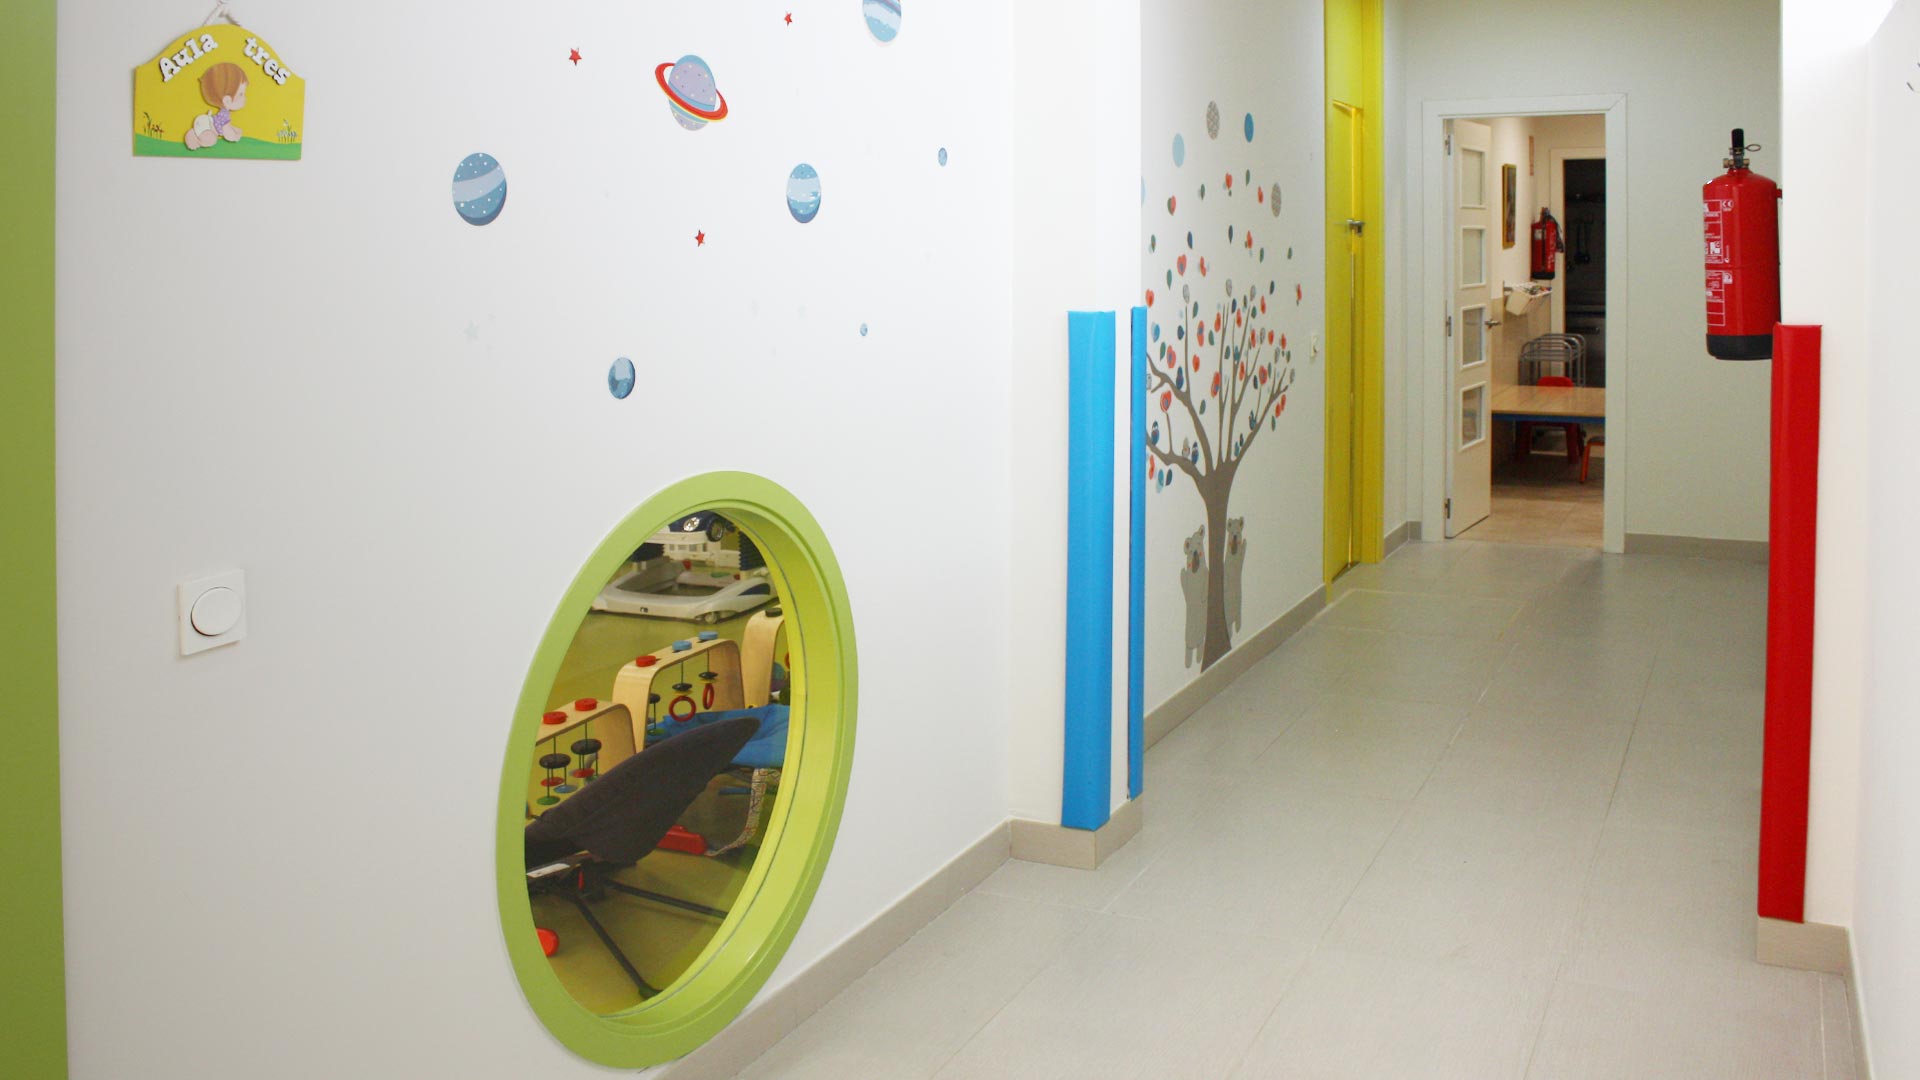 Zonas comunes - Imagen de galería del Centro de Educación Infantil Gibralfaro